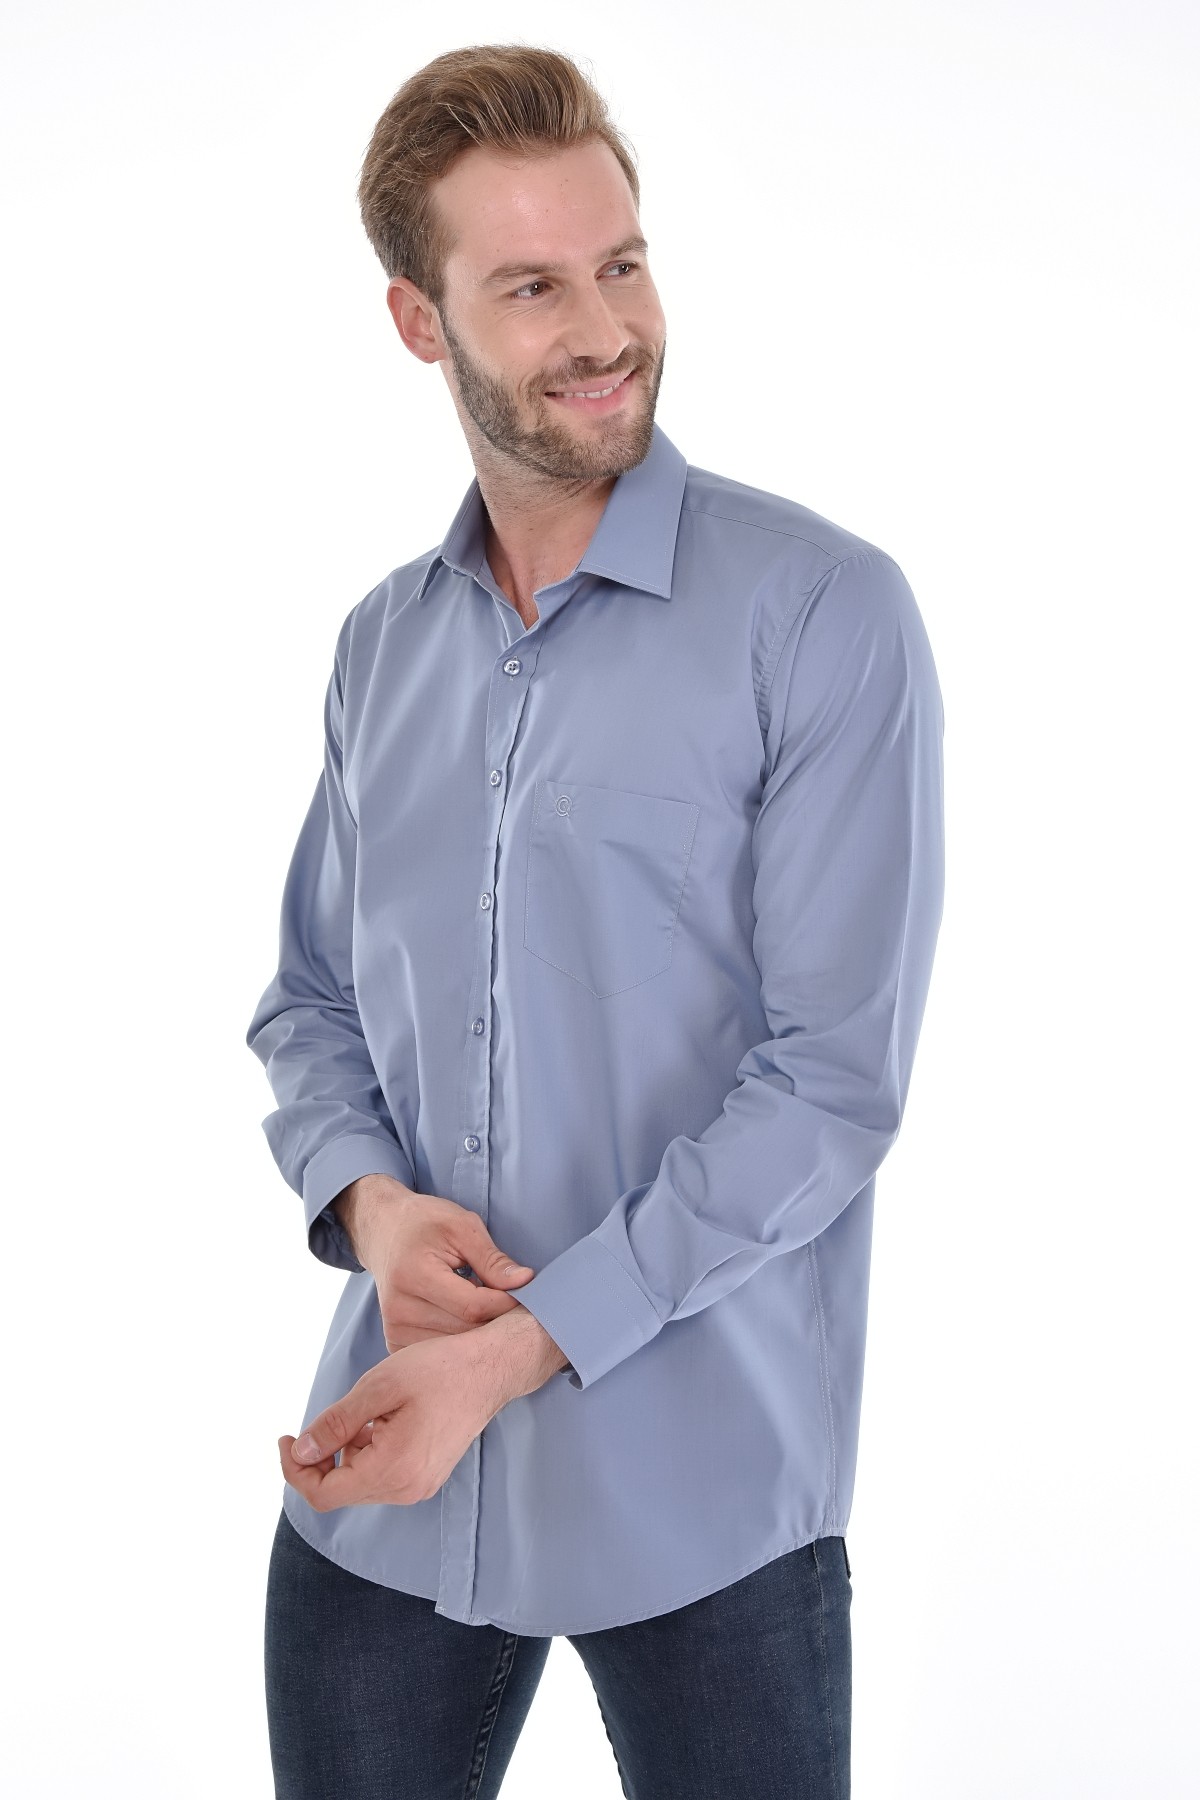 Çizgi Triko Cepli Klasik Kalıp Düz Renk Uzun Kollu Erkek Gömlek - GRİ